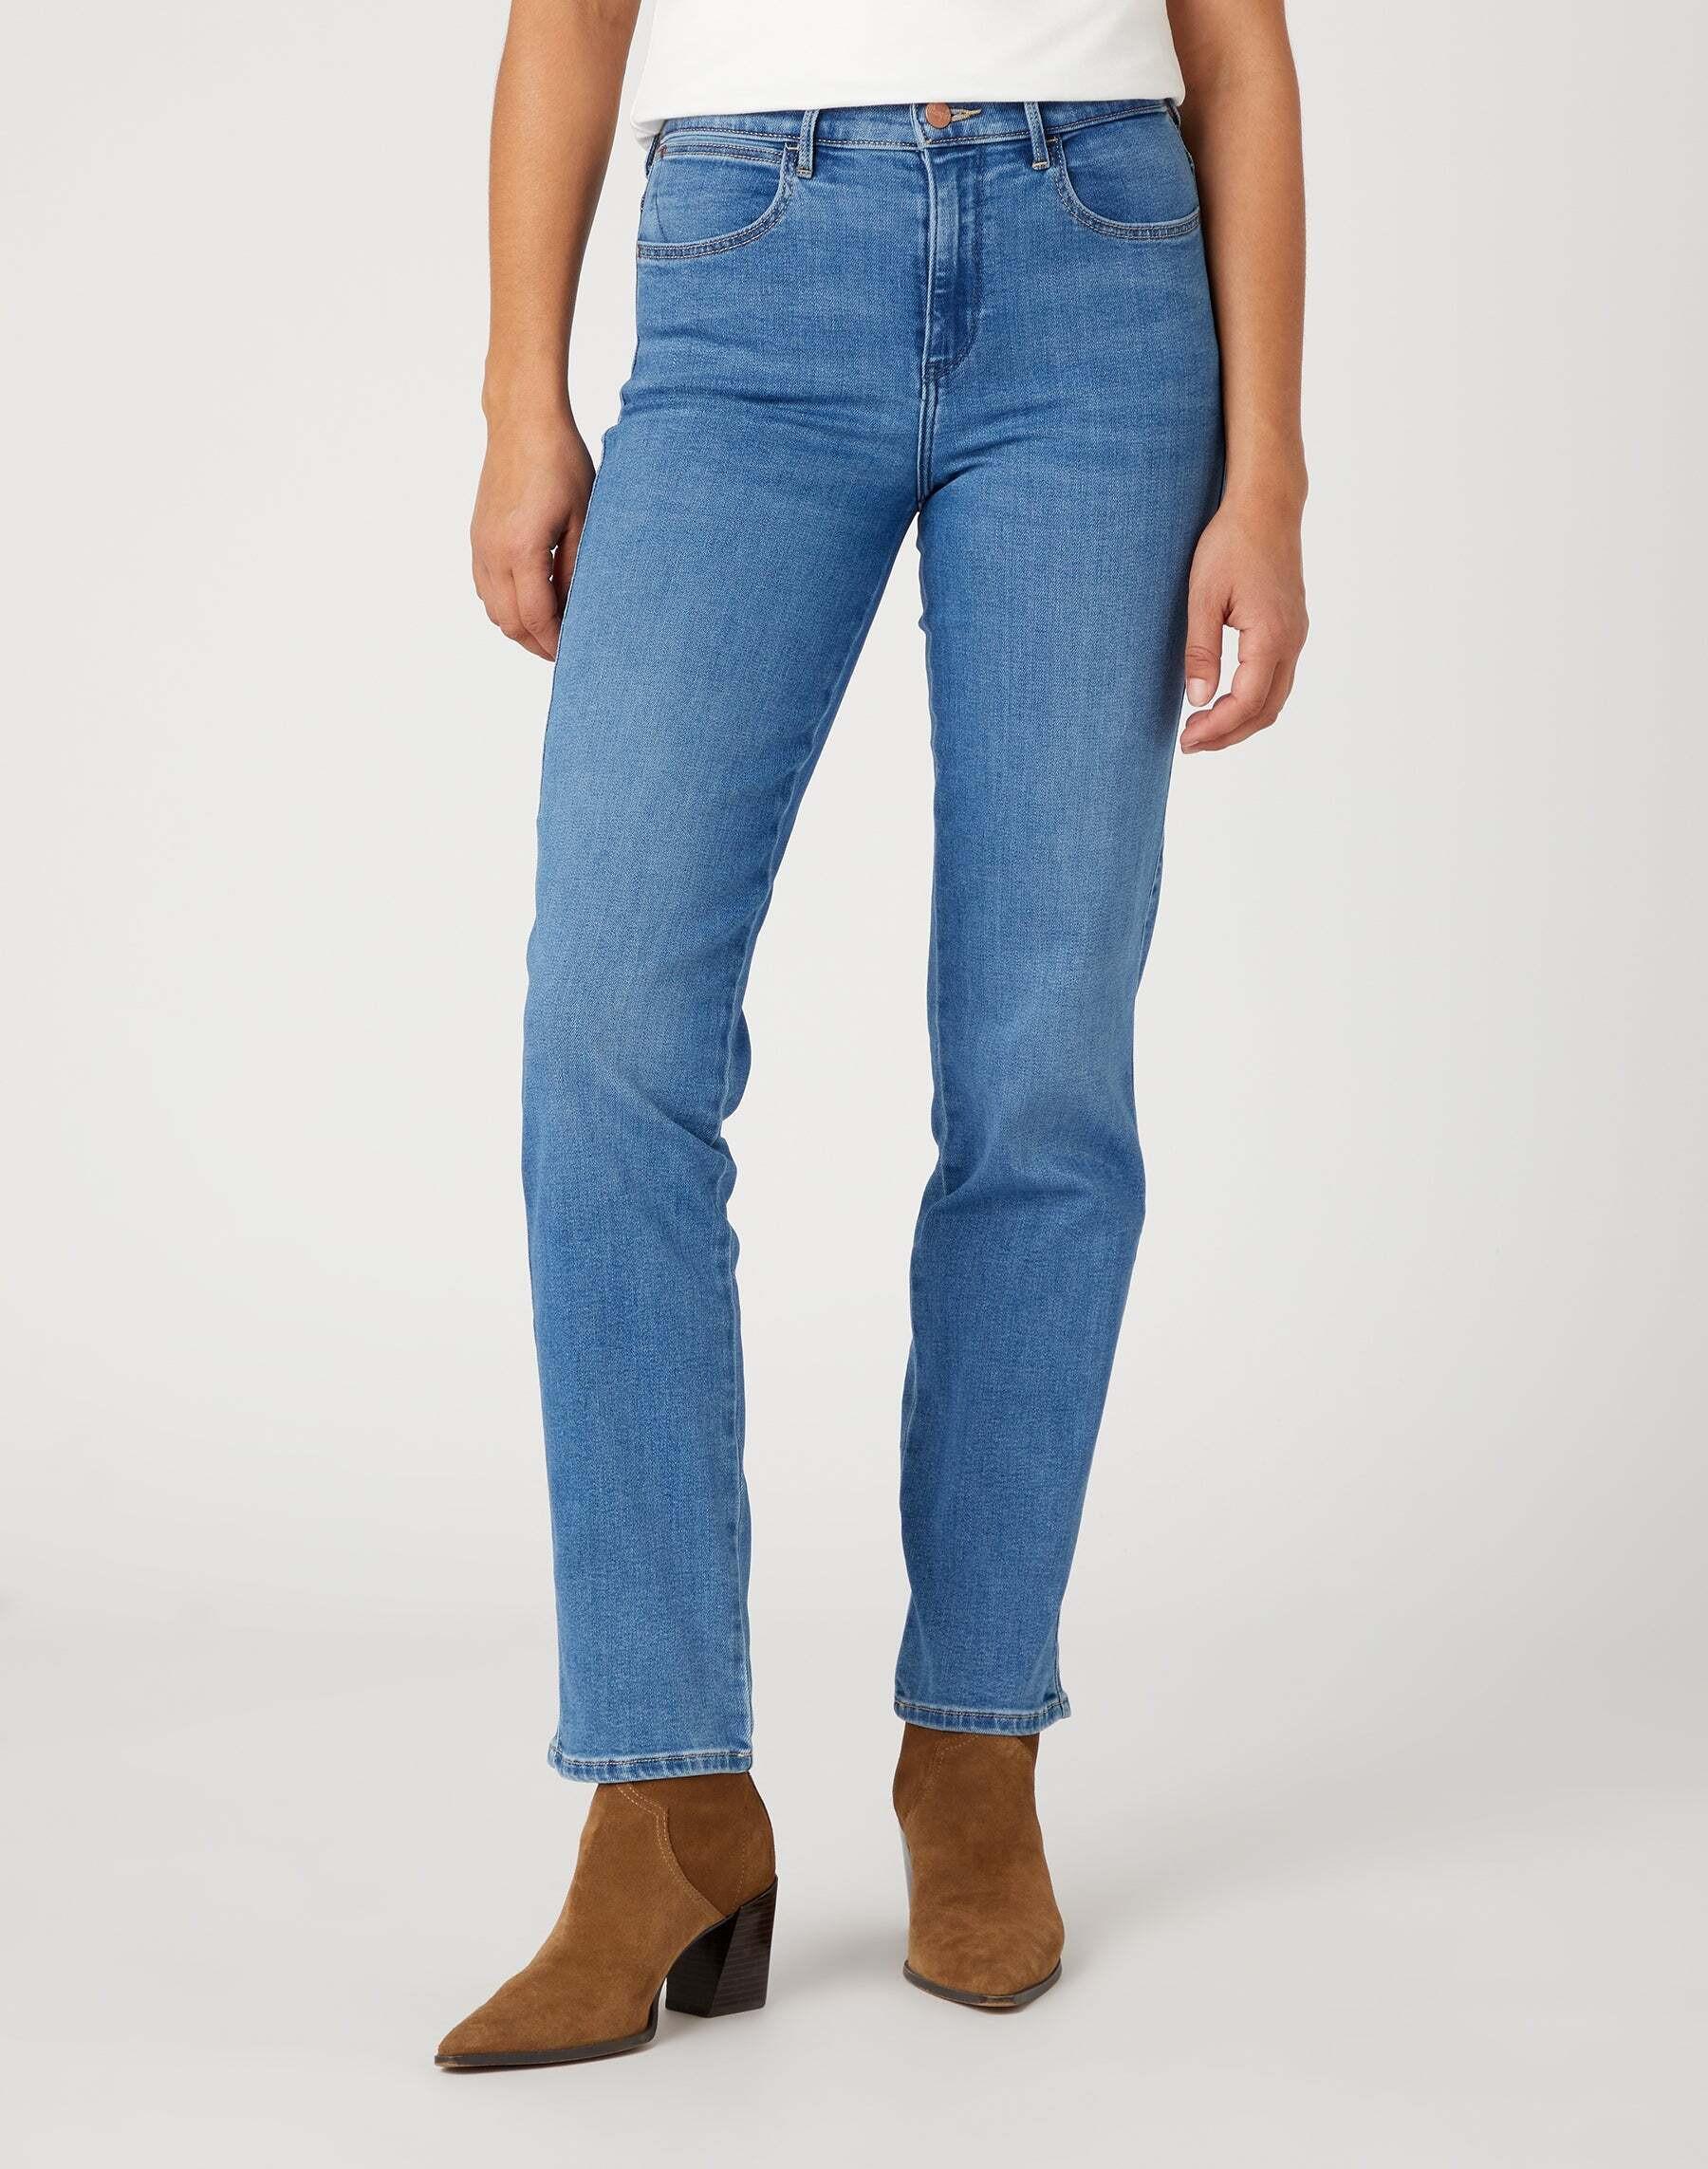 Jeans Straight Damen Hellblau L34/W36 von Wrangler